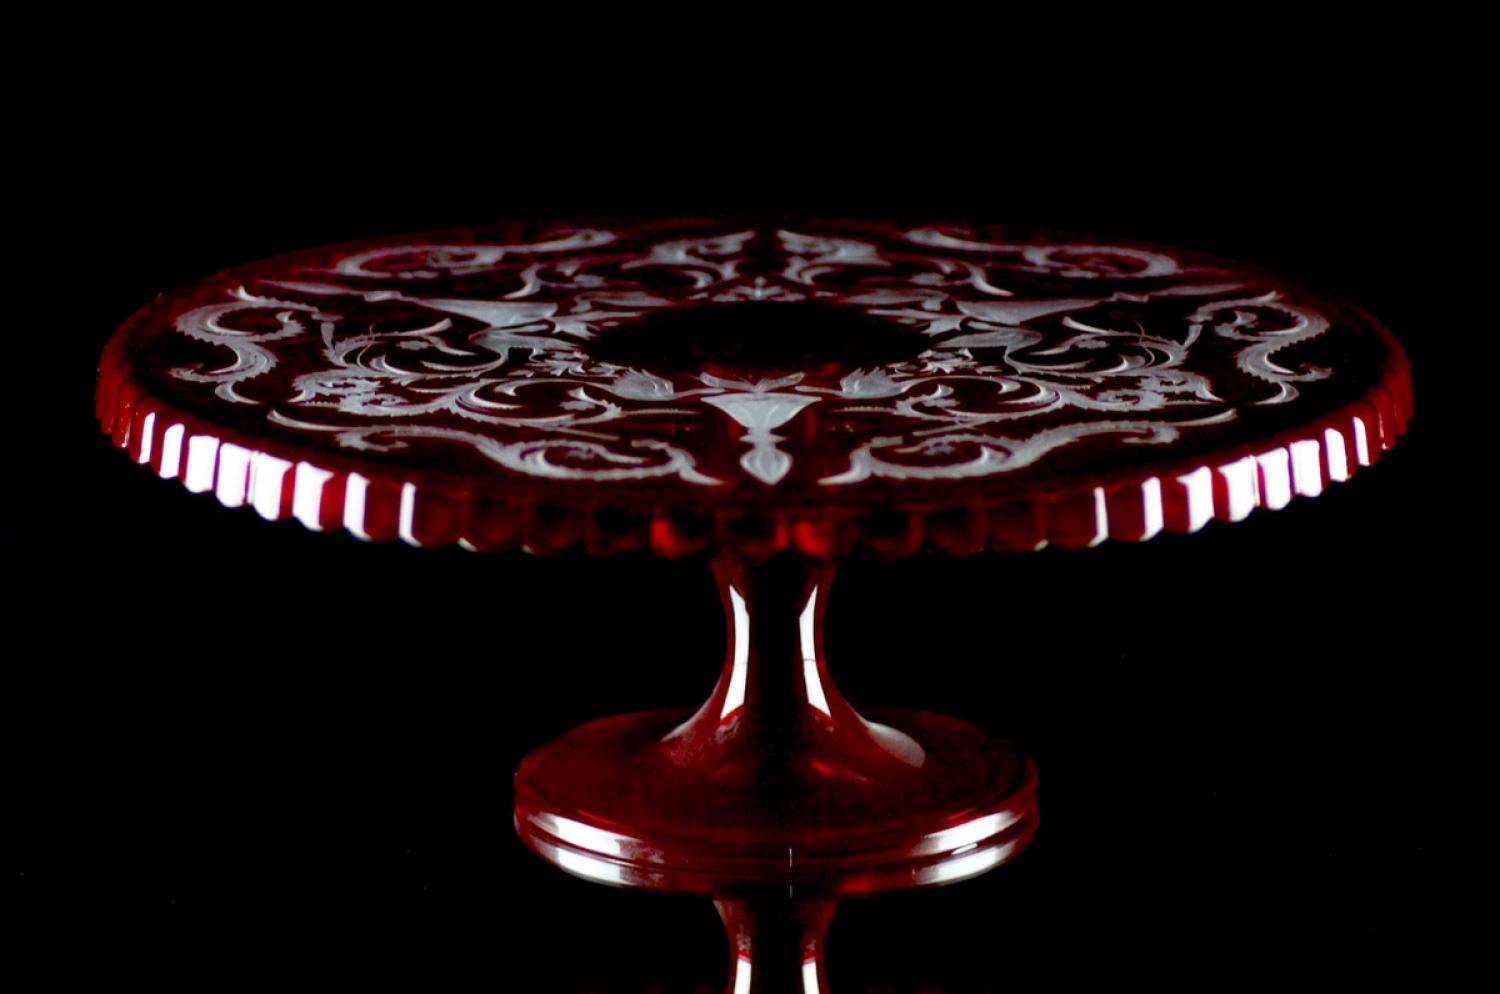 Casa Padrino Luxus Kuchenteller Rot / Silber Ø 32 x H. 12 cm - Handgefertigte und handgravierte Glas Kuchenplatte - Hotel & Restaurant Accessoires - Luxus Qualität Bild 1